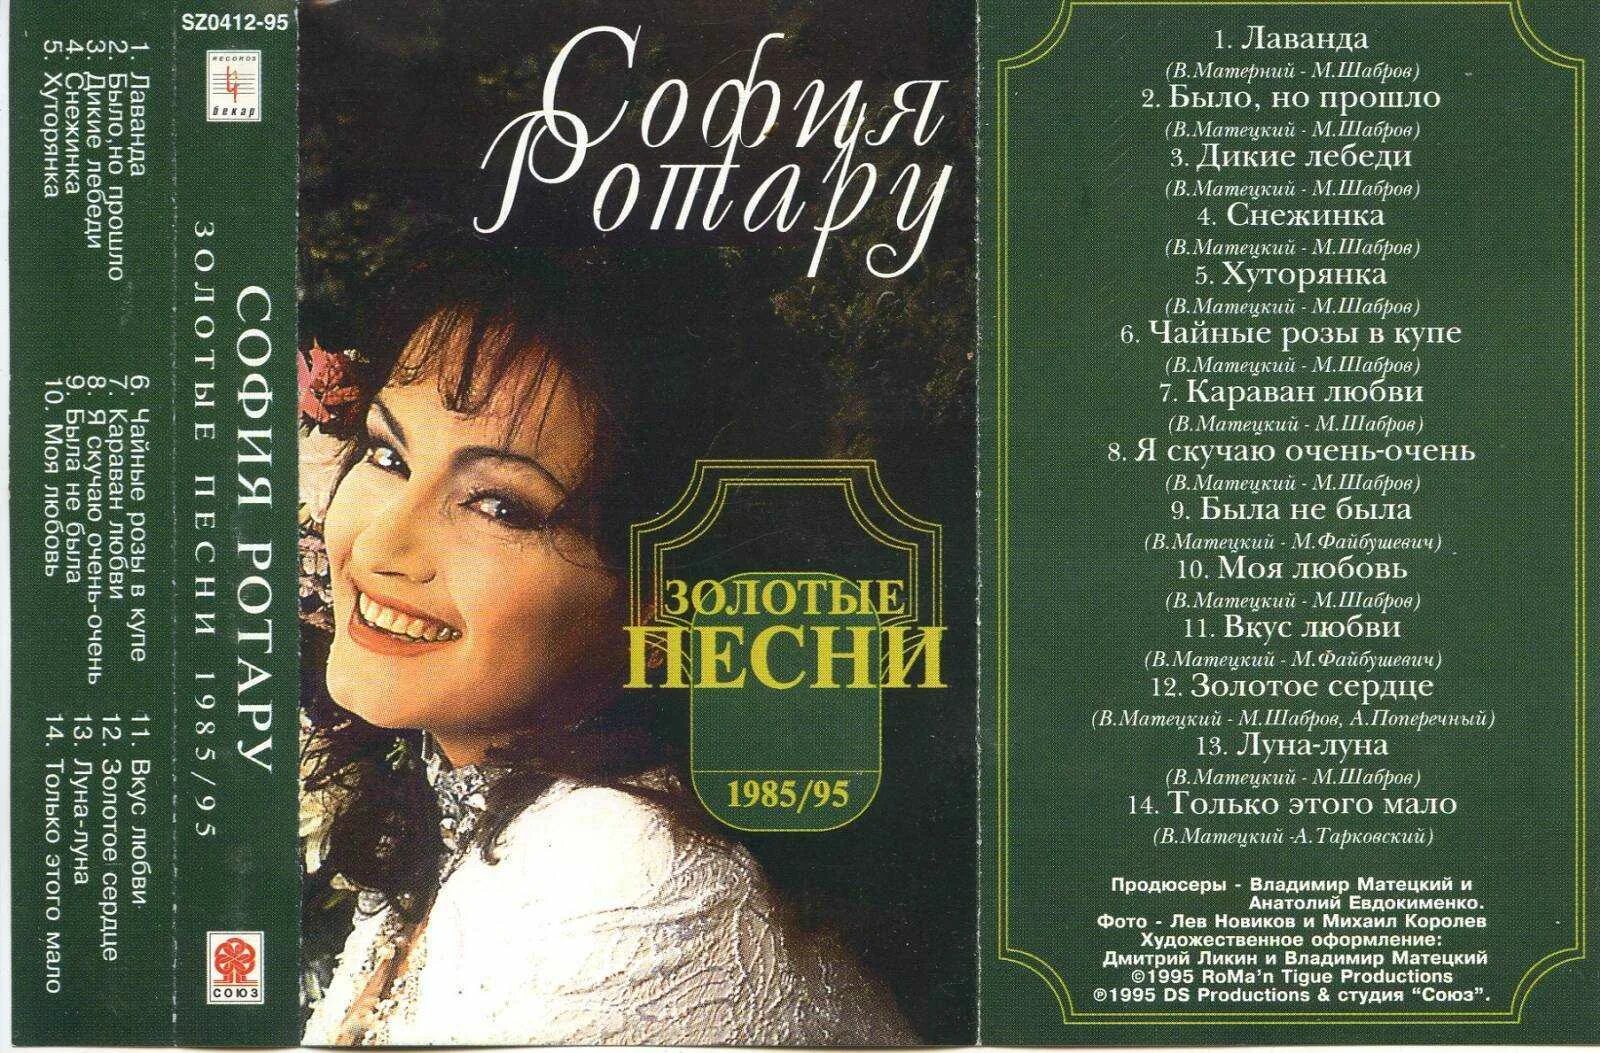 Послушать песни луны. Софія Ротару-Караван любви 1993 CD.